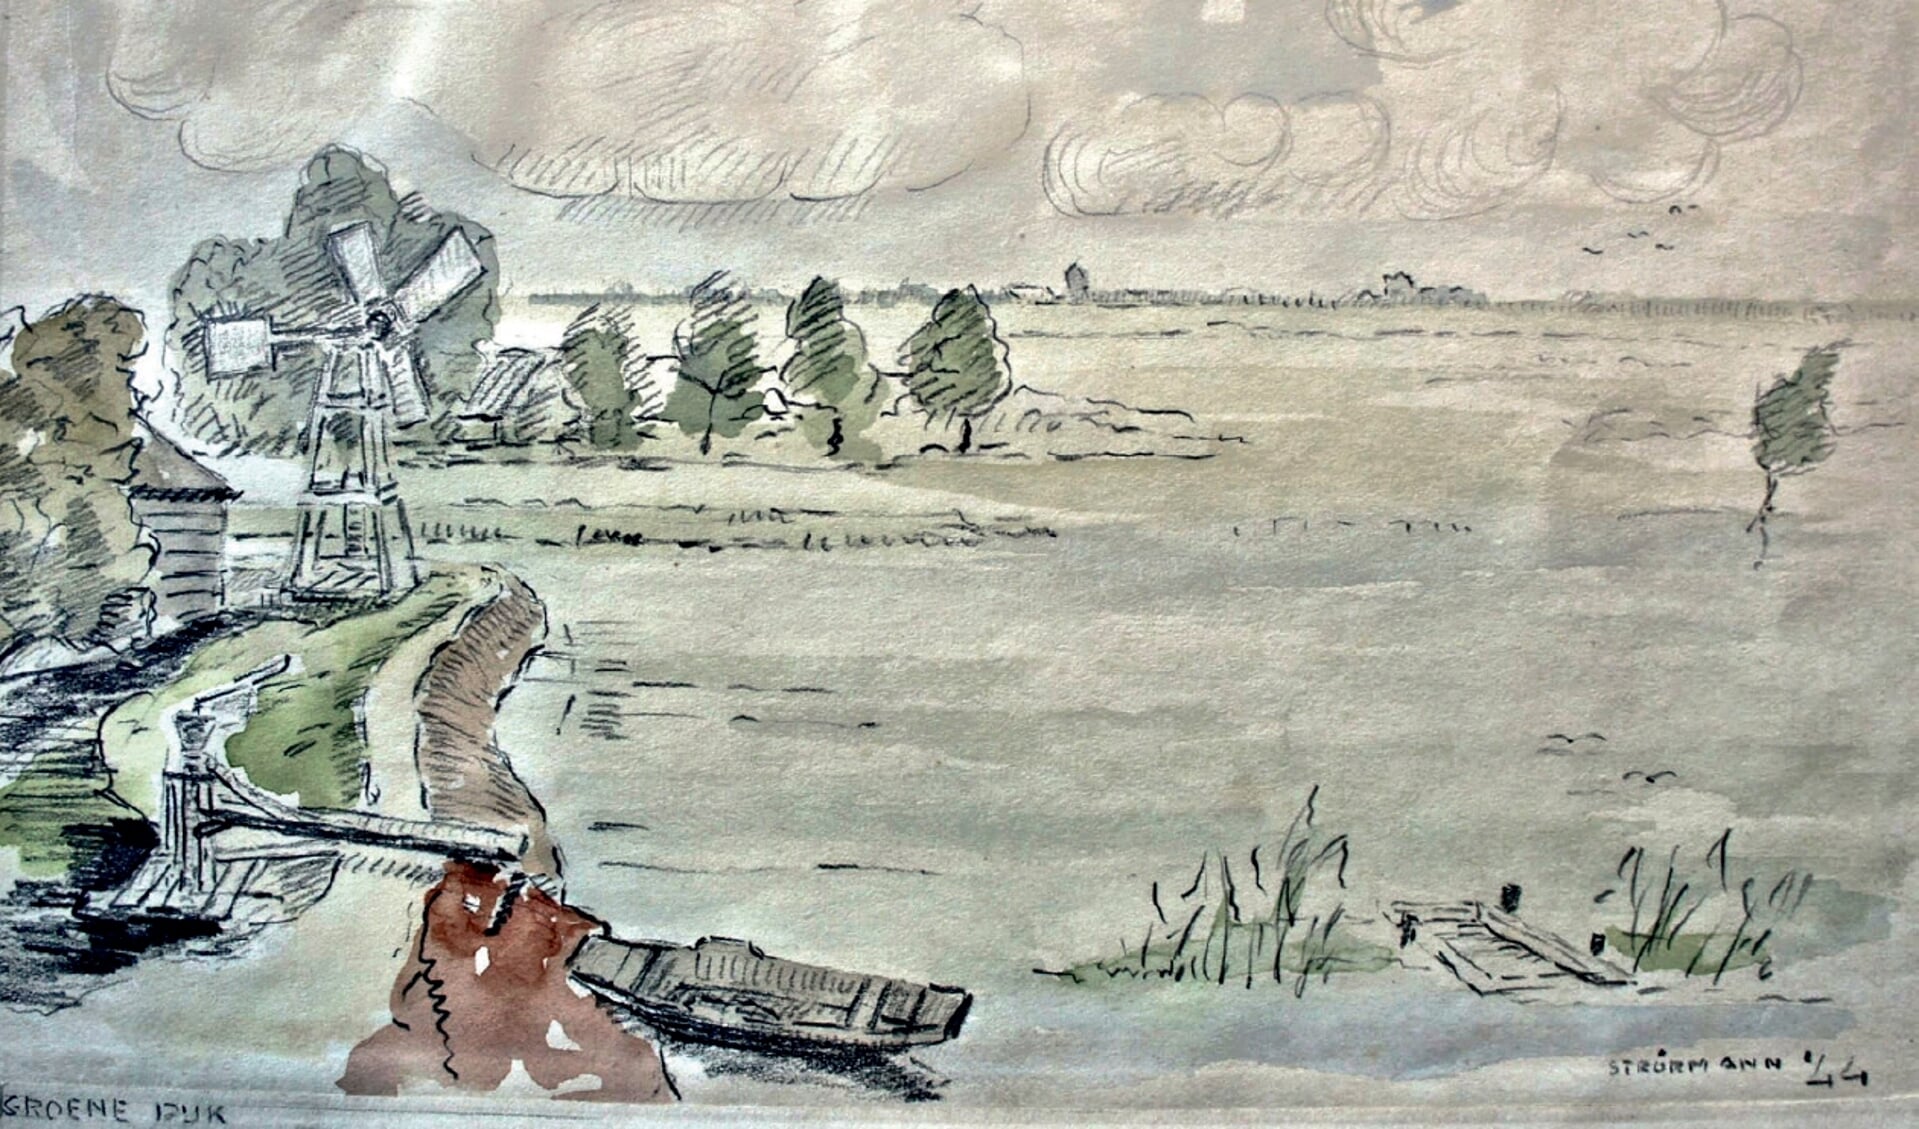 Aquarel van het gemaal van de polder Esse, Gans- en Blaardorp. Wim Strörmann (1899-1961) werd op pad gestuurd om de inundatie vast te leggen, eerst op tekening en daarna als aquarel.